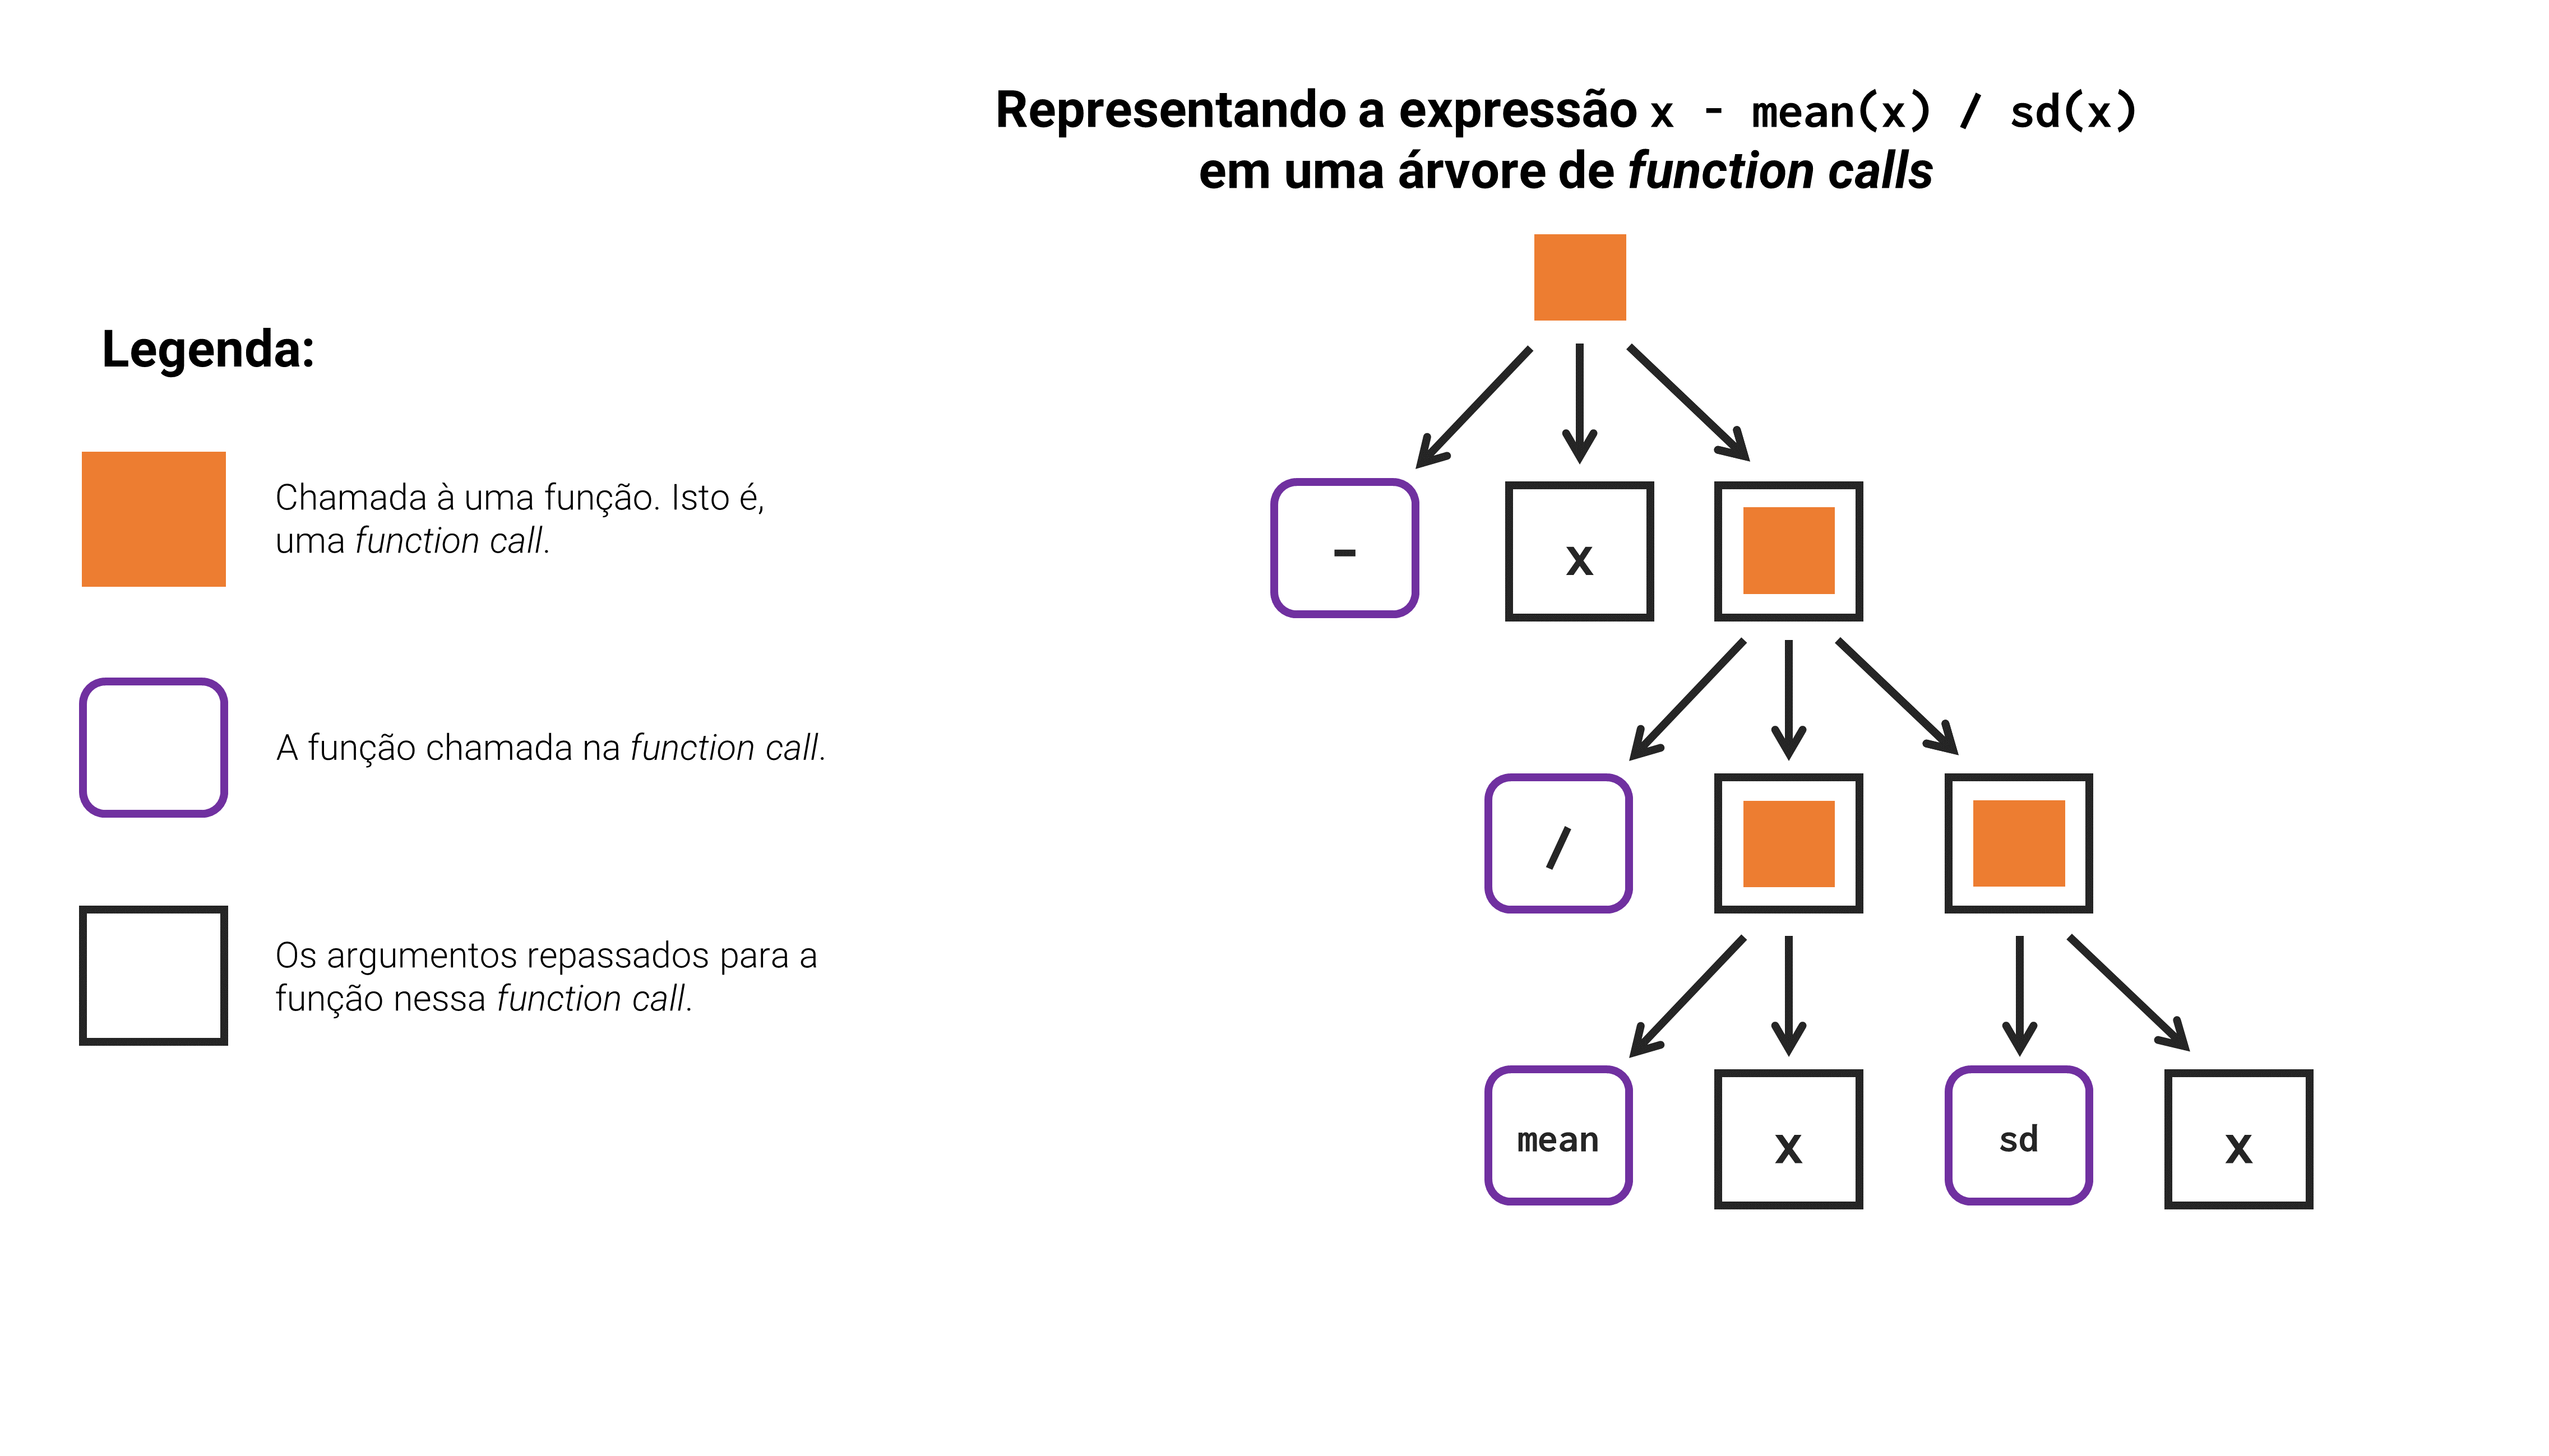 Representando uma expressão do R em uma árvore de chamadas a funções - Exemplo 2